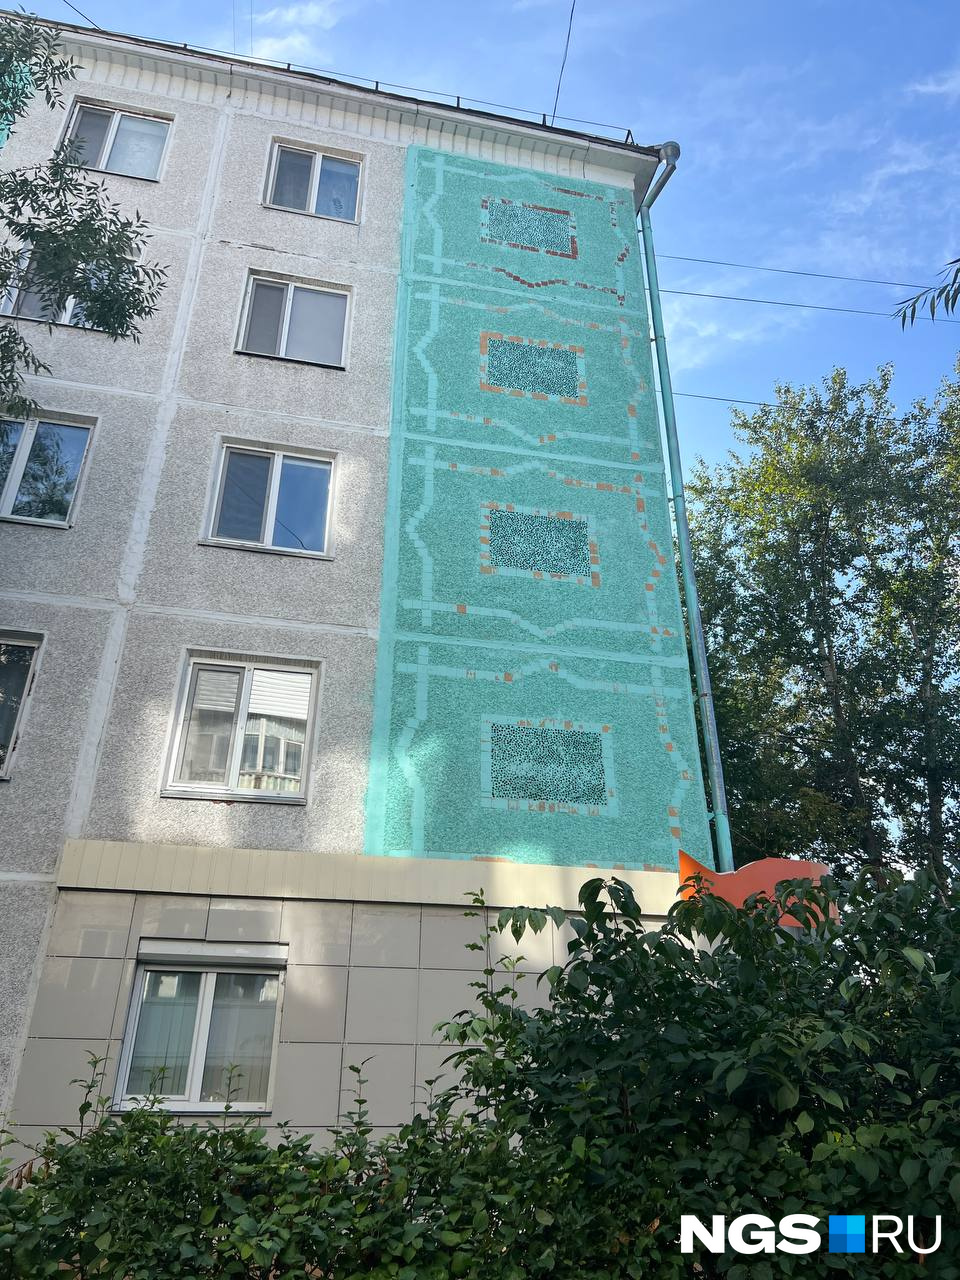 В Петропавловске значительную часть типовых домов украшают разнообразные мозаики с национальным колоритом